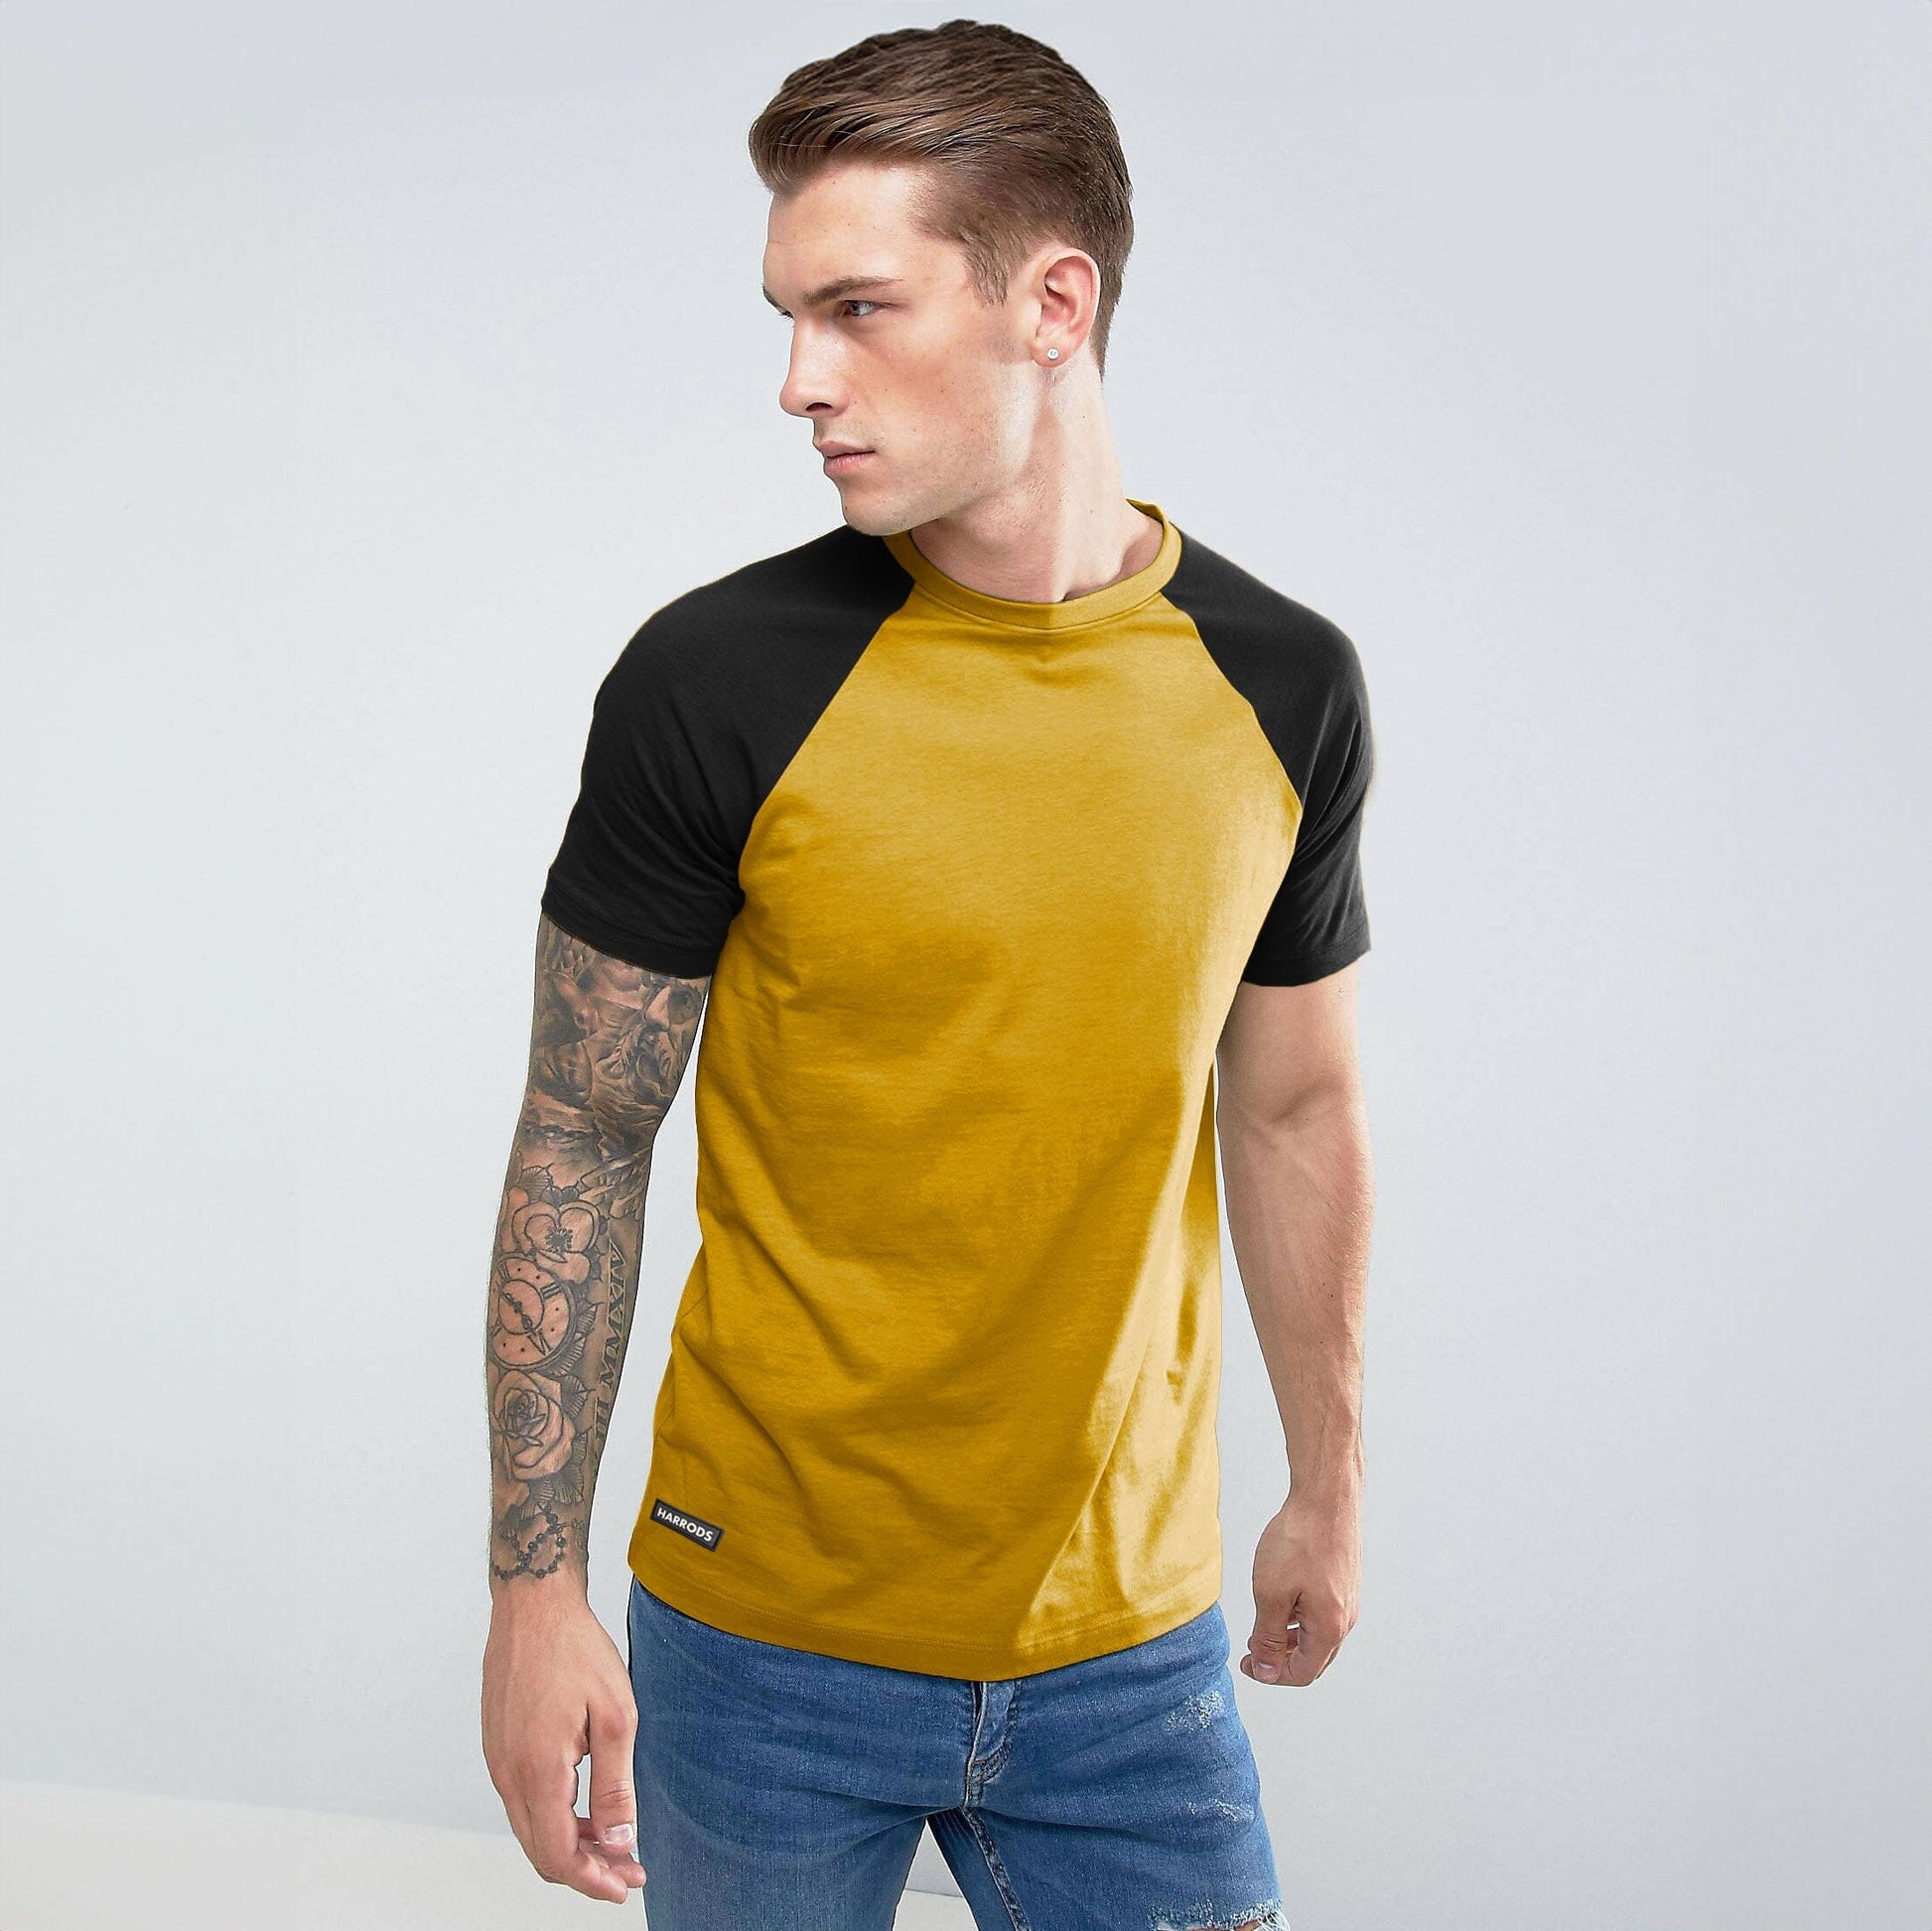 Harrods Men's Contrast Sleeve Style Crew Neck Tee Shirt Men's Tee Shirt IBT Yellow S 